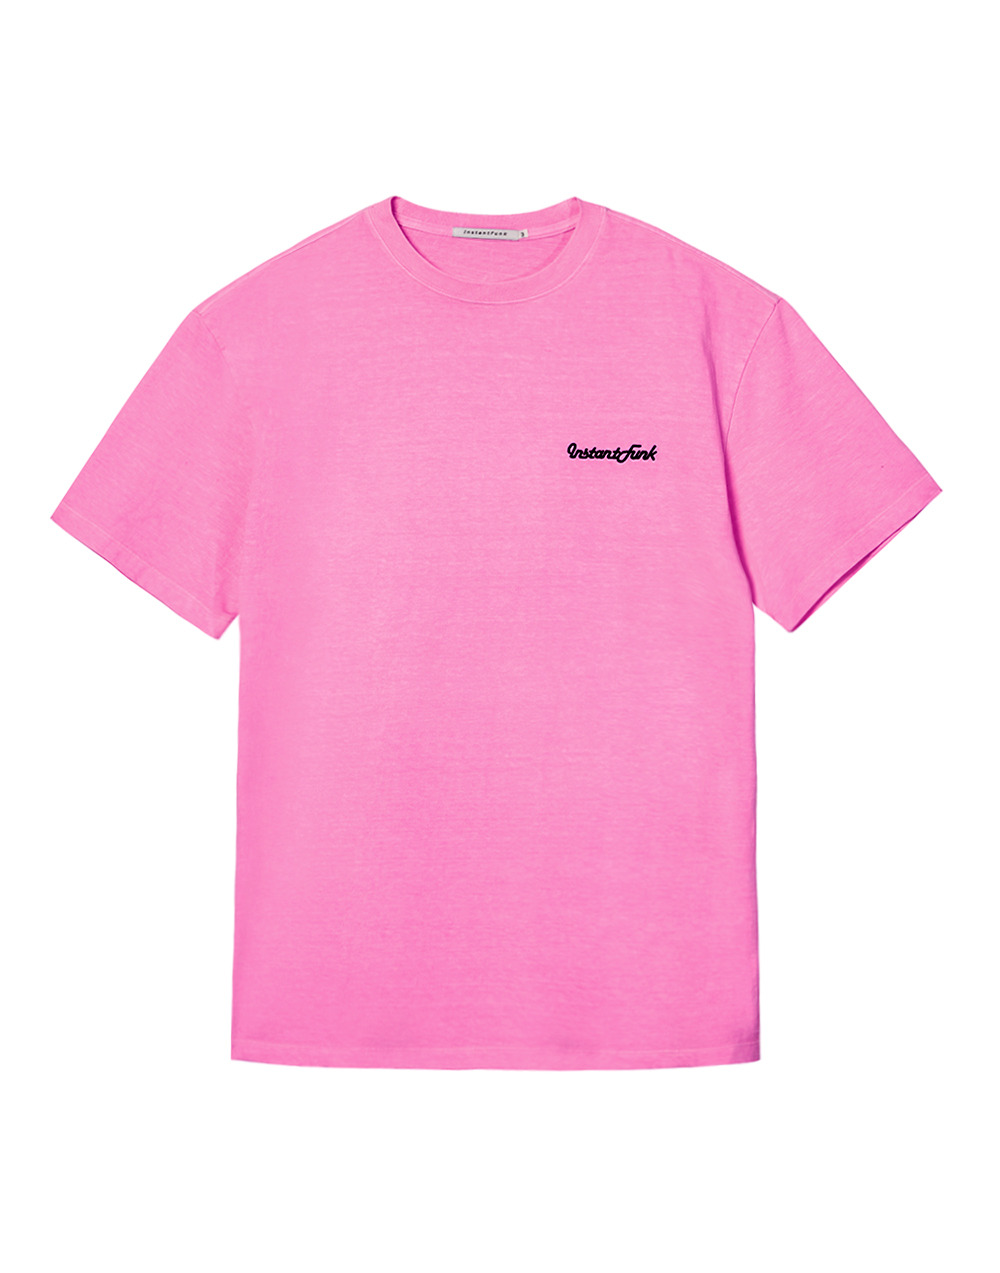 네온 피그먼트다잉 티셔츠 - 핑크